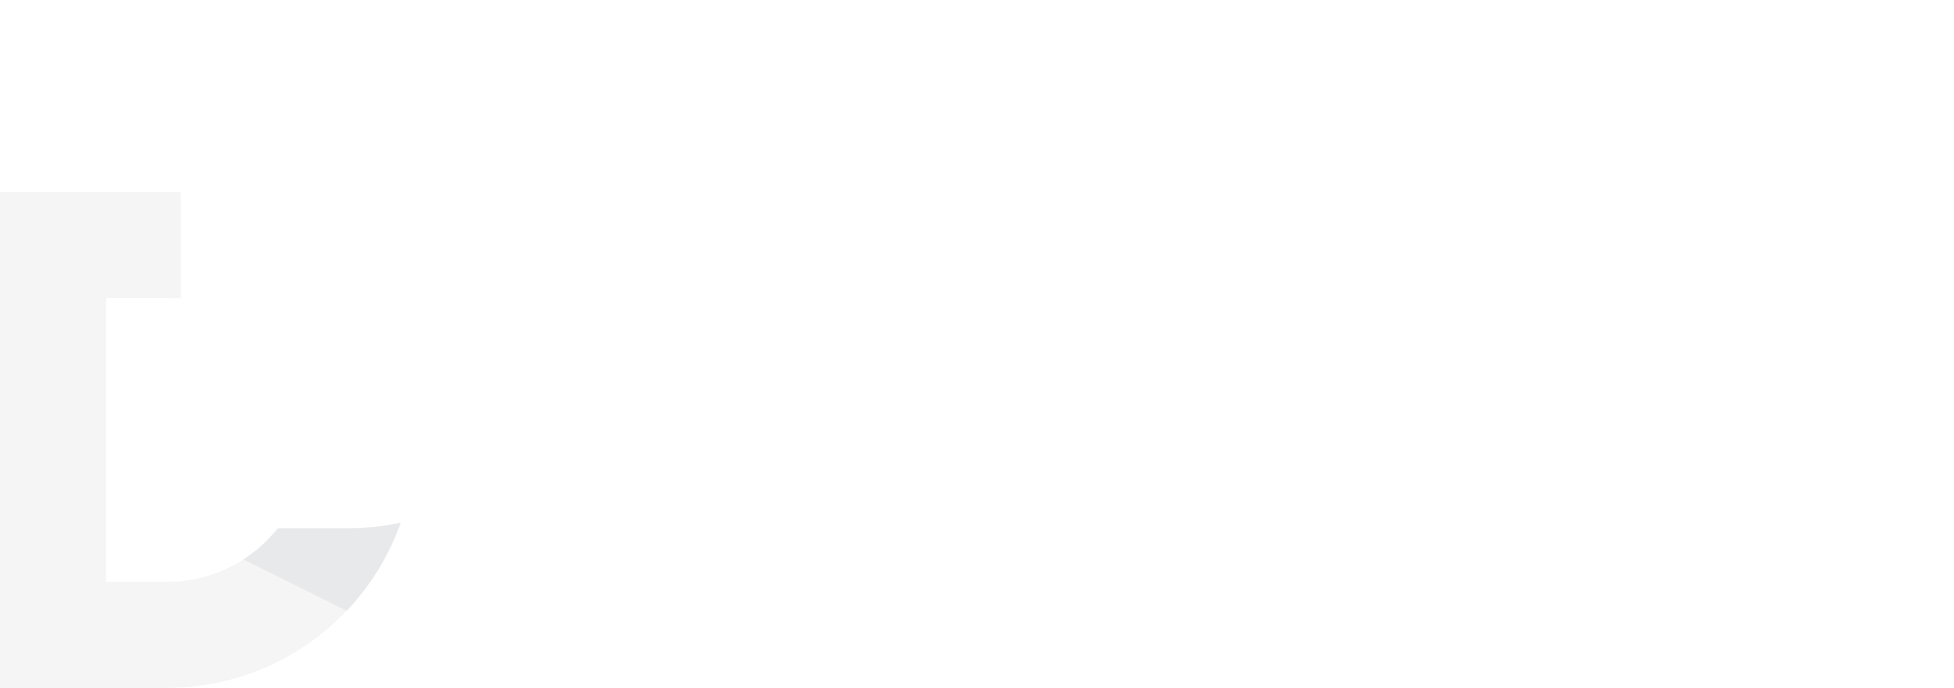 branding - logo white 2